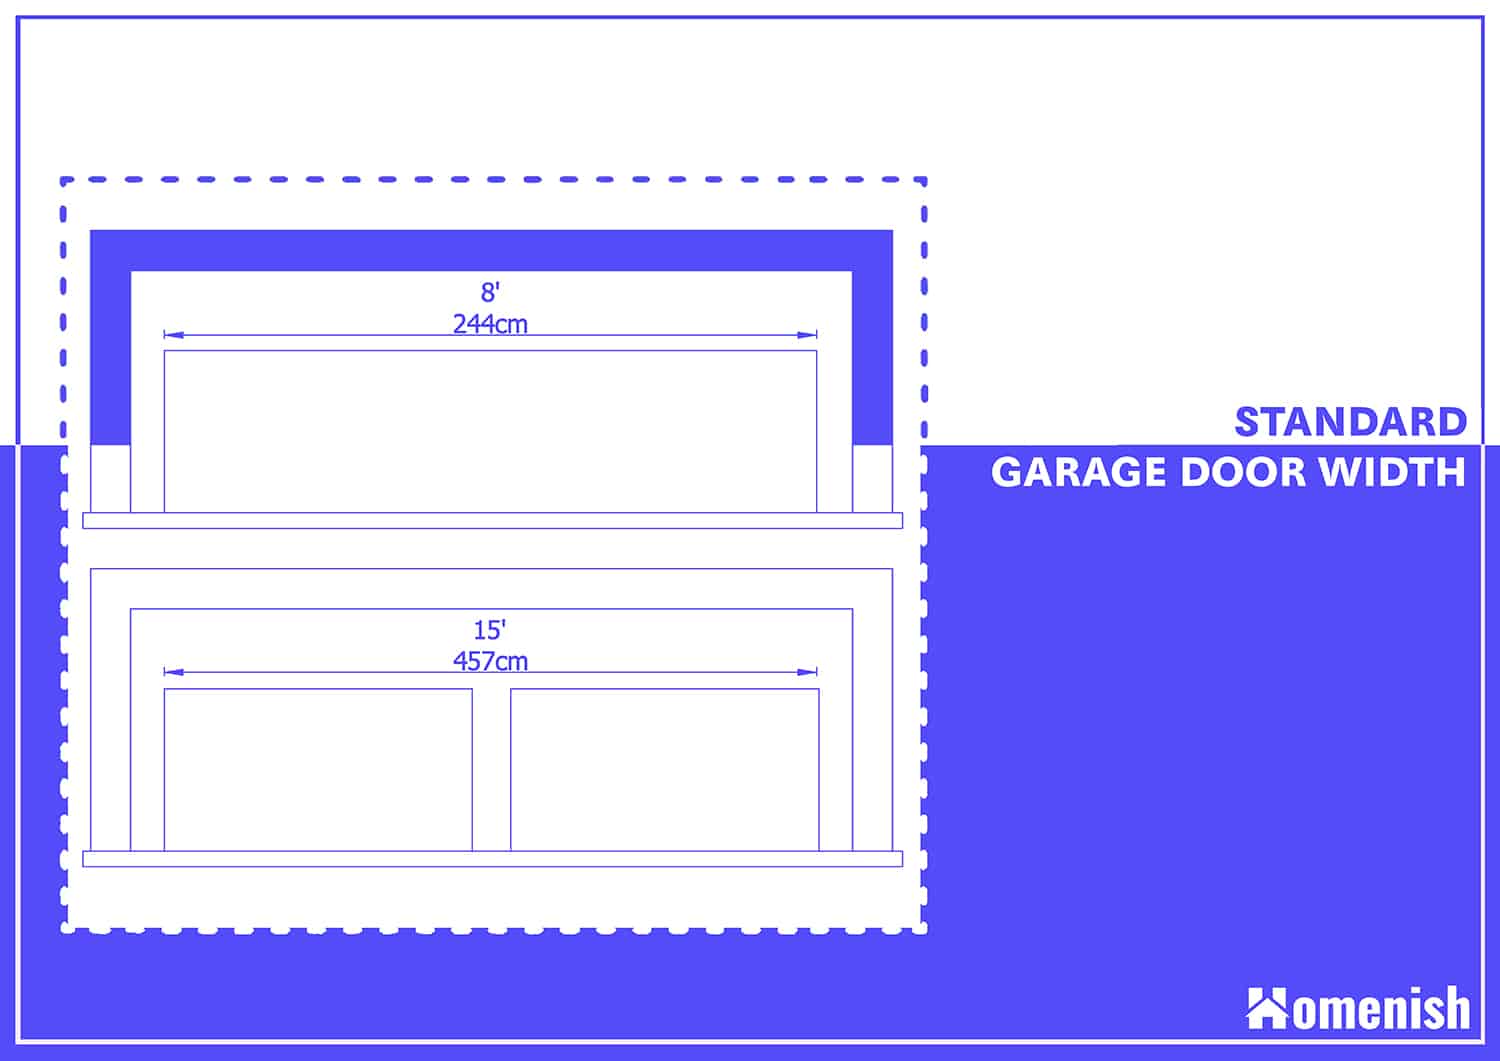 Standard Garage Door Width